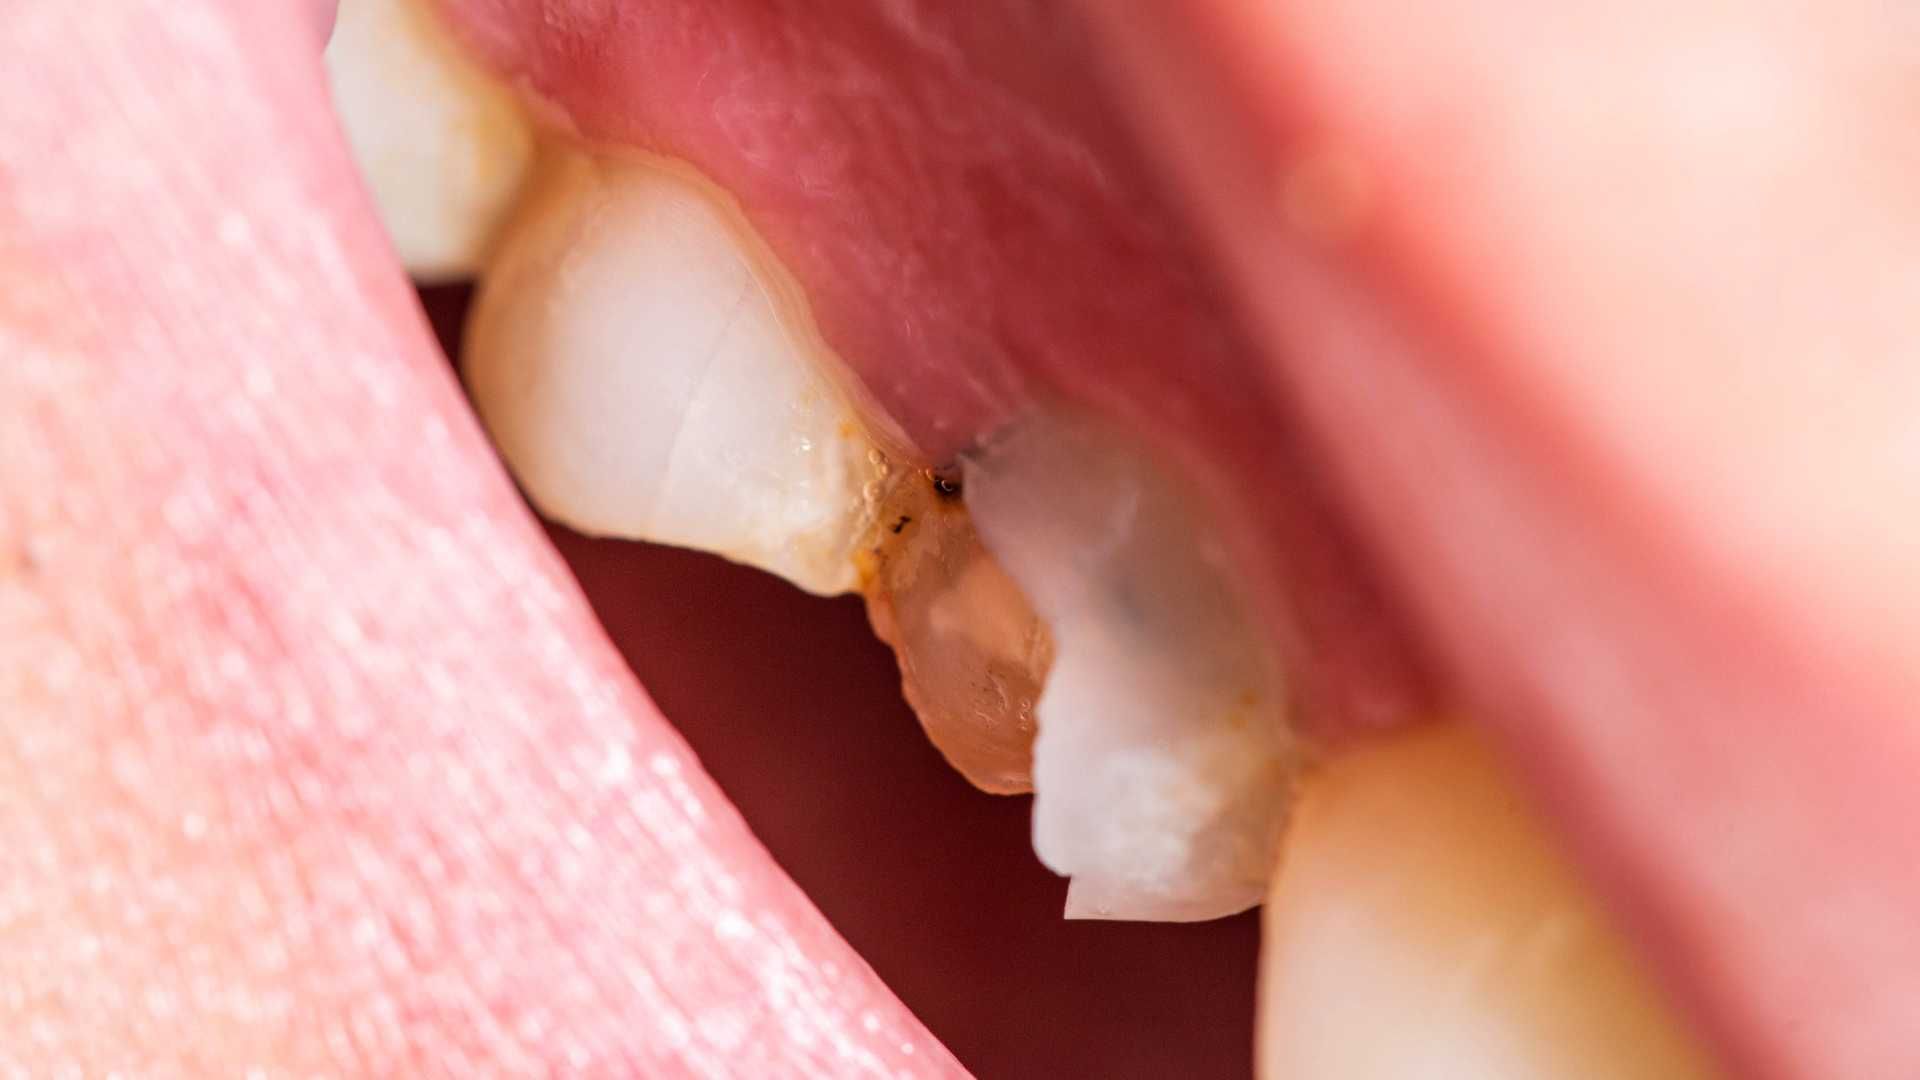 پرکردن دندان دو سطحی با آمالگام ایرانی